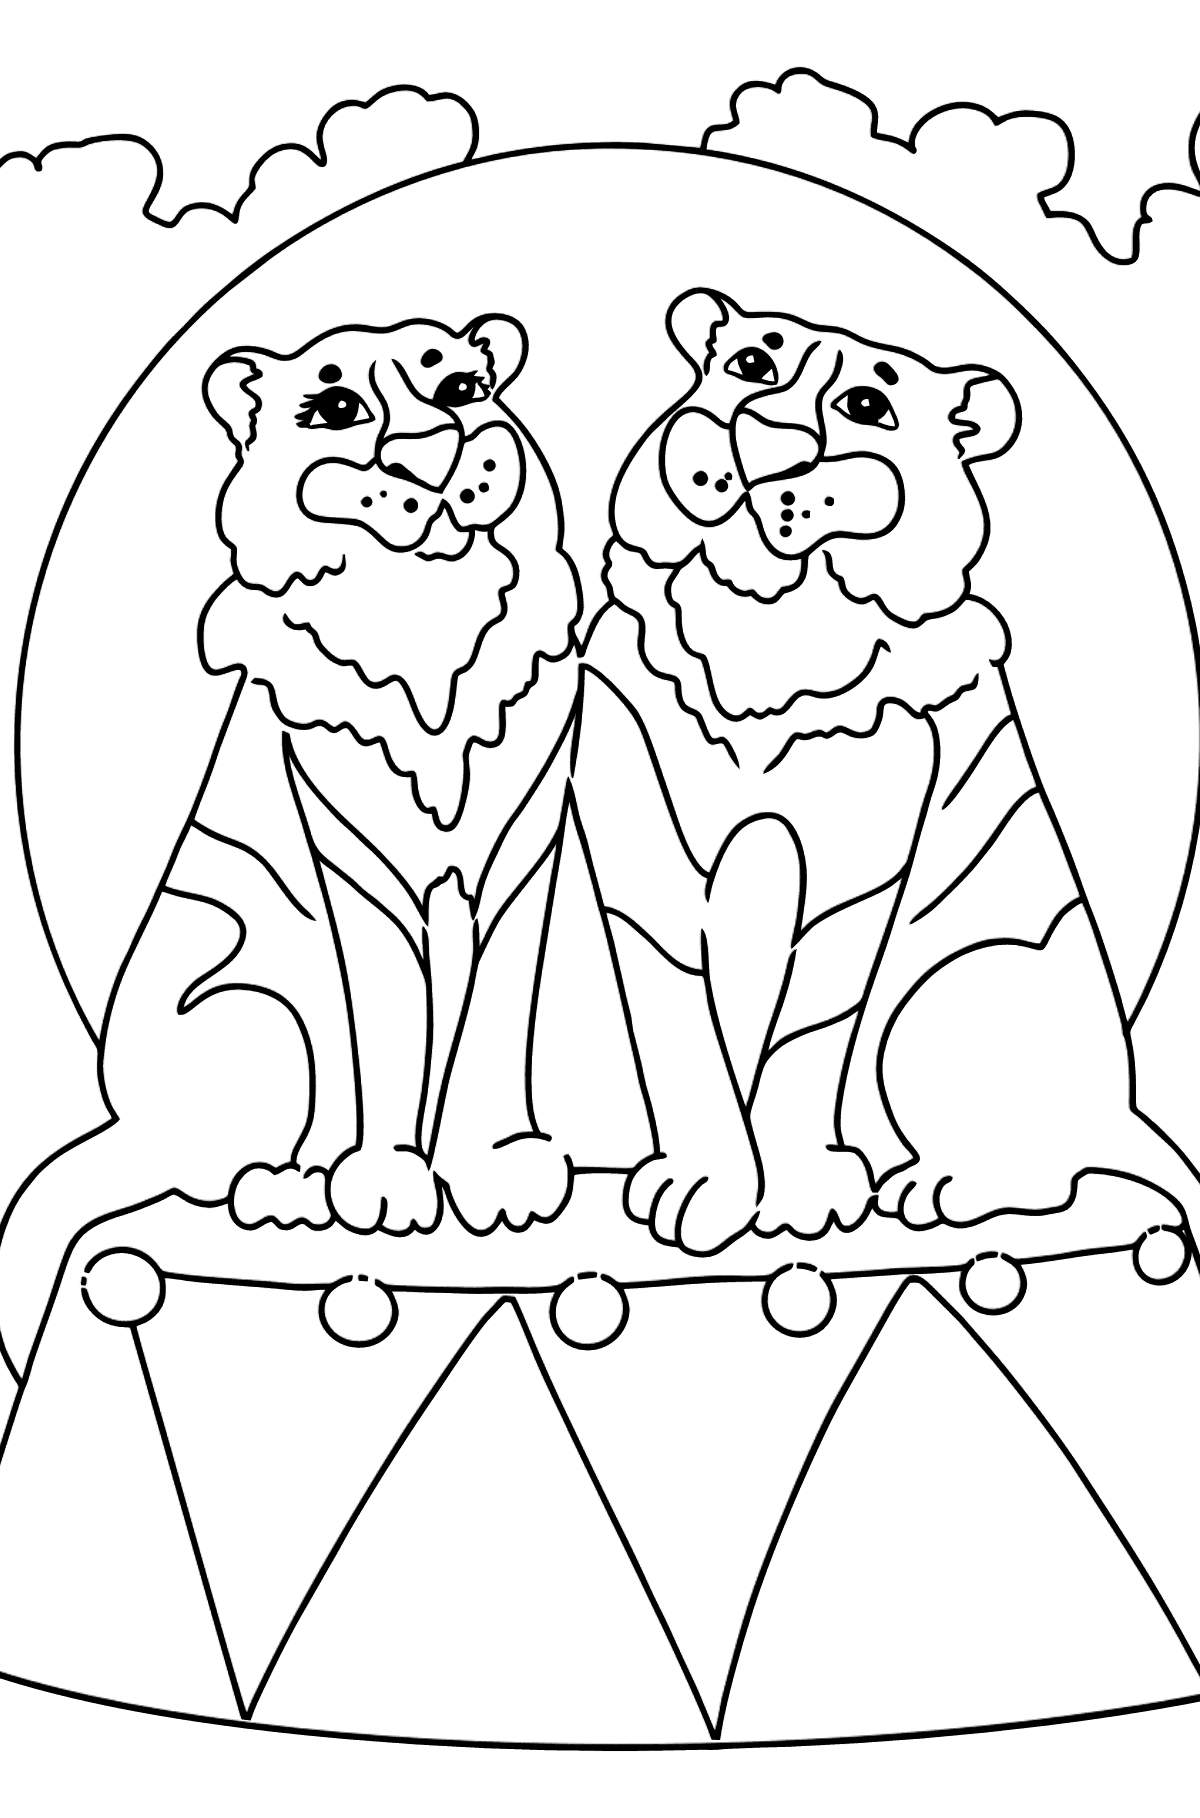 Desenho de tigres no circo para colorir (fácil) - Imagens para Colorir para Crianças